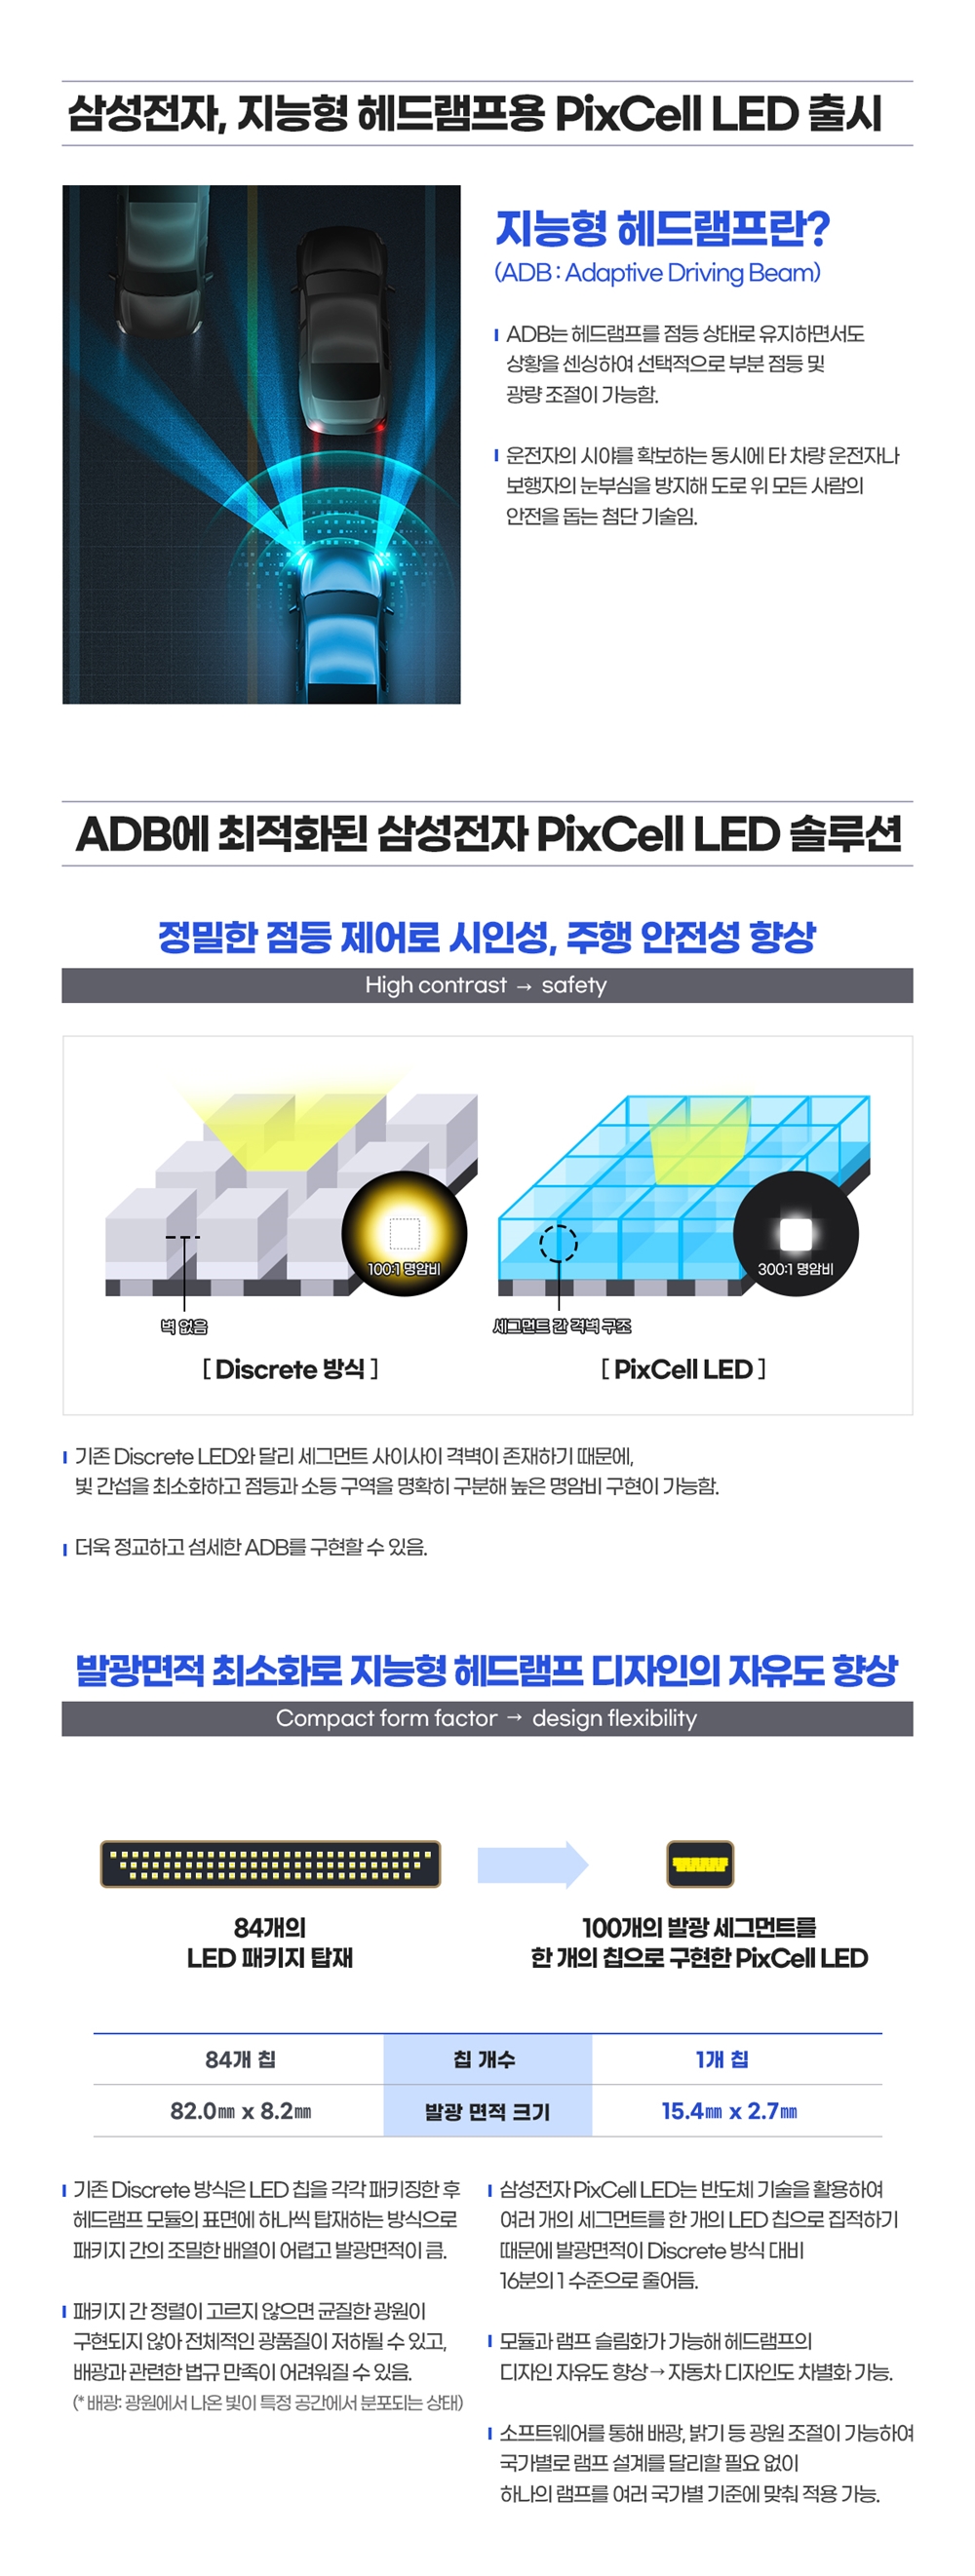 삼성전자 지능형 헤드램프용 PixCell LED 출시 지능형 헤드램프란?(ADB : Adaptive Driving Beam) ADB는 헤드램프를 점등상태로 유지하면서도 상황을 센싱하여 선택적으로 부분 점등 및 광량 조절이 가능함. 운전자의 시야를 확보하는 동시에 타 차량 운전자나 보행자의 눈부심을 방지해 도로 위 모든 사람의 안전을 돕는 첨단 기술임. ADB에 최적화된 삼성전자 PixCell LED솔루션 정밀한 점등제어로 시인성, 주행 안정성 향상 High contrast- safety Discrete 방식 PixCell LED 기존 Disrete LED와 달리 세그먼트 사이사이 격벽이 존재하기 때문에 빛 간섭을 최소화하고 점등과 소등 구역을 명확히 구분해 높은 명암비 구현이 가능함. 더욱 정교하고 섬세한 ADB를 구현할 수 있음. 발광면적 최소화로 지능형 헤드램프 디자인의 자유도 향상 Compact Form Factor - design flexibility 84개의 LED 패키지 탑재 100개의 발광 세그먼트를 한개의 칩으로 구현한 PixCell LED 84개의 칩 칩개수 1개의 칩 82.0mm*8.2mm 발광 면적 크기 15.4mm*2.7mm 기존 Discrete 방식은 LED 칩을 각각 패키징한 후 헤드램프 모듈의 표면에 하나씩 탑재하는 방식으로 패키지간의 조밀한 배열이 어렵고 발광 면적이 큼. 삼성전자 PixCell LED는 반도체 기술을 활용하여 여러개의 세그먼트를 한개의 LED 칩으로 집적하기 때문에 발광면적이 Discrete 방식 대비 16분의 1수준으로 줄어듬. 패키지 간 정렬이 고르지 않으면 균질한 광원이 구현되지 않아 전체적인 광품질이 저하될 수 있고, 배광과 관련된 법규 만족이 어려워질 수 있음.(배광: 광원에서 나온 빛이 특정 공간에서 분포되는 상태) 모듈과 램프 슬림화가 가능해 헤드램프의 디자인 자유도 향상 - 자동차 디자인도 차별화 가능. 소프트웨어를 통해 배광, 밝기 등 광원 조절이 가능하여 국가별로 램프 설계를 달리할 필요 없이 하나의 램프를 여러 국가별 기준에 맞춰 적용 가능.